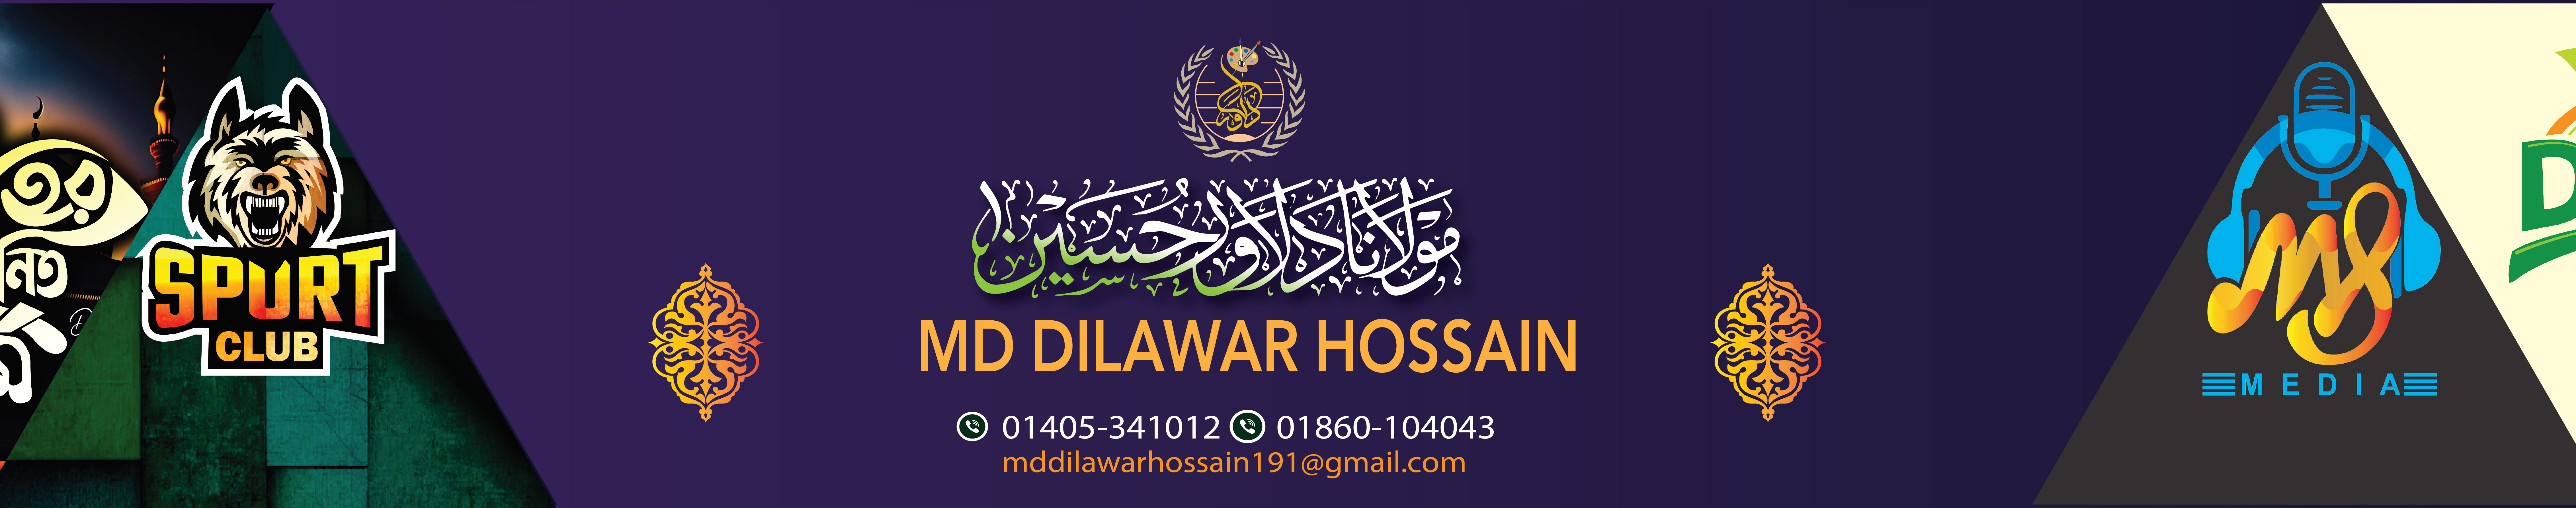 Dilawar Hossain's profile banner